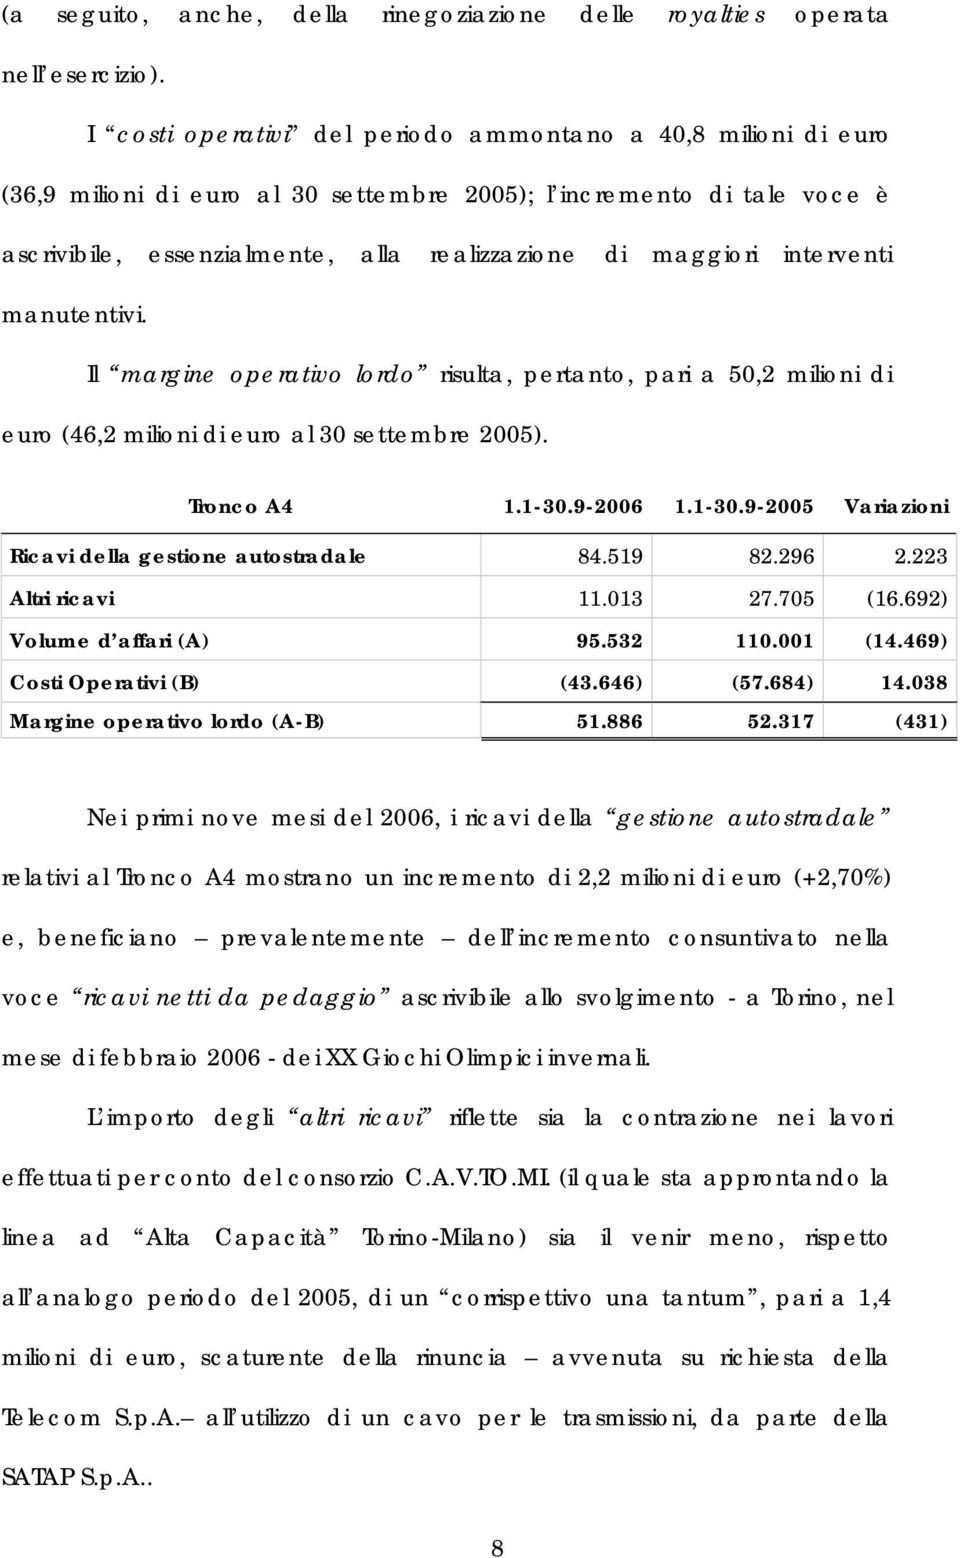 interventi manutentivi. Il margine operativo lordo risulta, pertanto, pari a 50,2 milioni di euro (46,2 milioni di euro al 30 settembre 2005). Tronco A4 1.1-30.